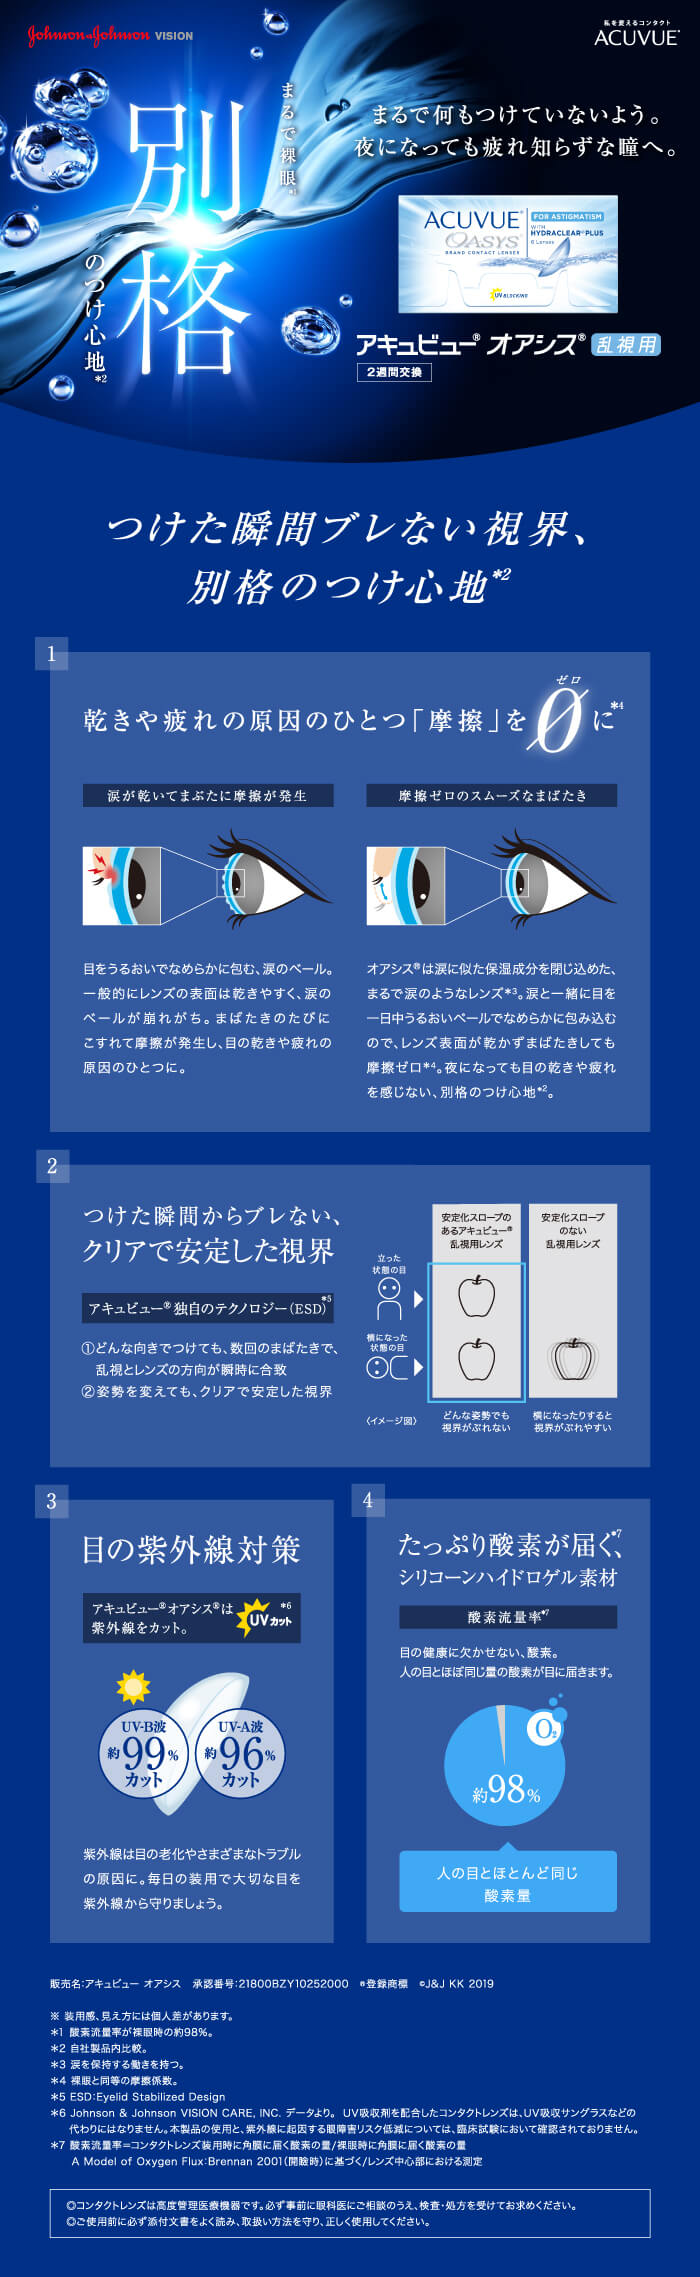 日本最大の<br>アキュビューオアシス 乱視用 4箱セット(6枚入x4) 乱視用 両眼6ヶ月分<br>(ジョンソン・エンド・ジョンソン 2WEEK  トーリック 2週間使い捨てコンタクトレンズ) 総合